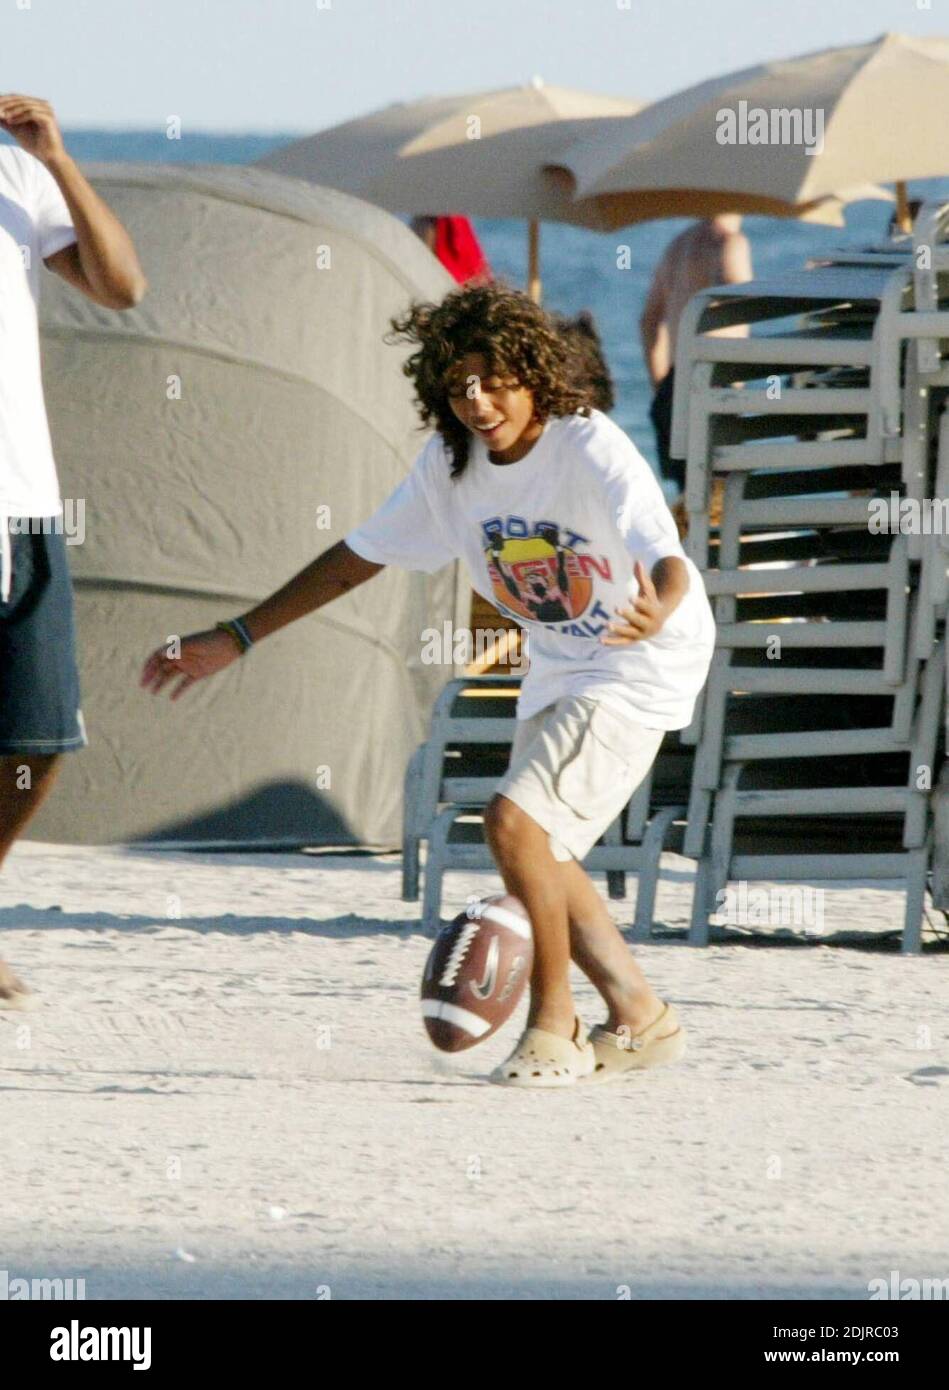 Boris Becker, la novia Sharlely Kerssenberg y sus dos hijos Elias y Noah retozan en la playa jugando al catch con un balón de fútbol. Miami Beach, FL 10/09/06 Foto de stock